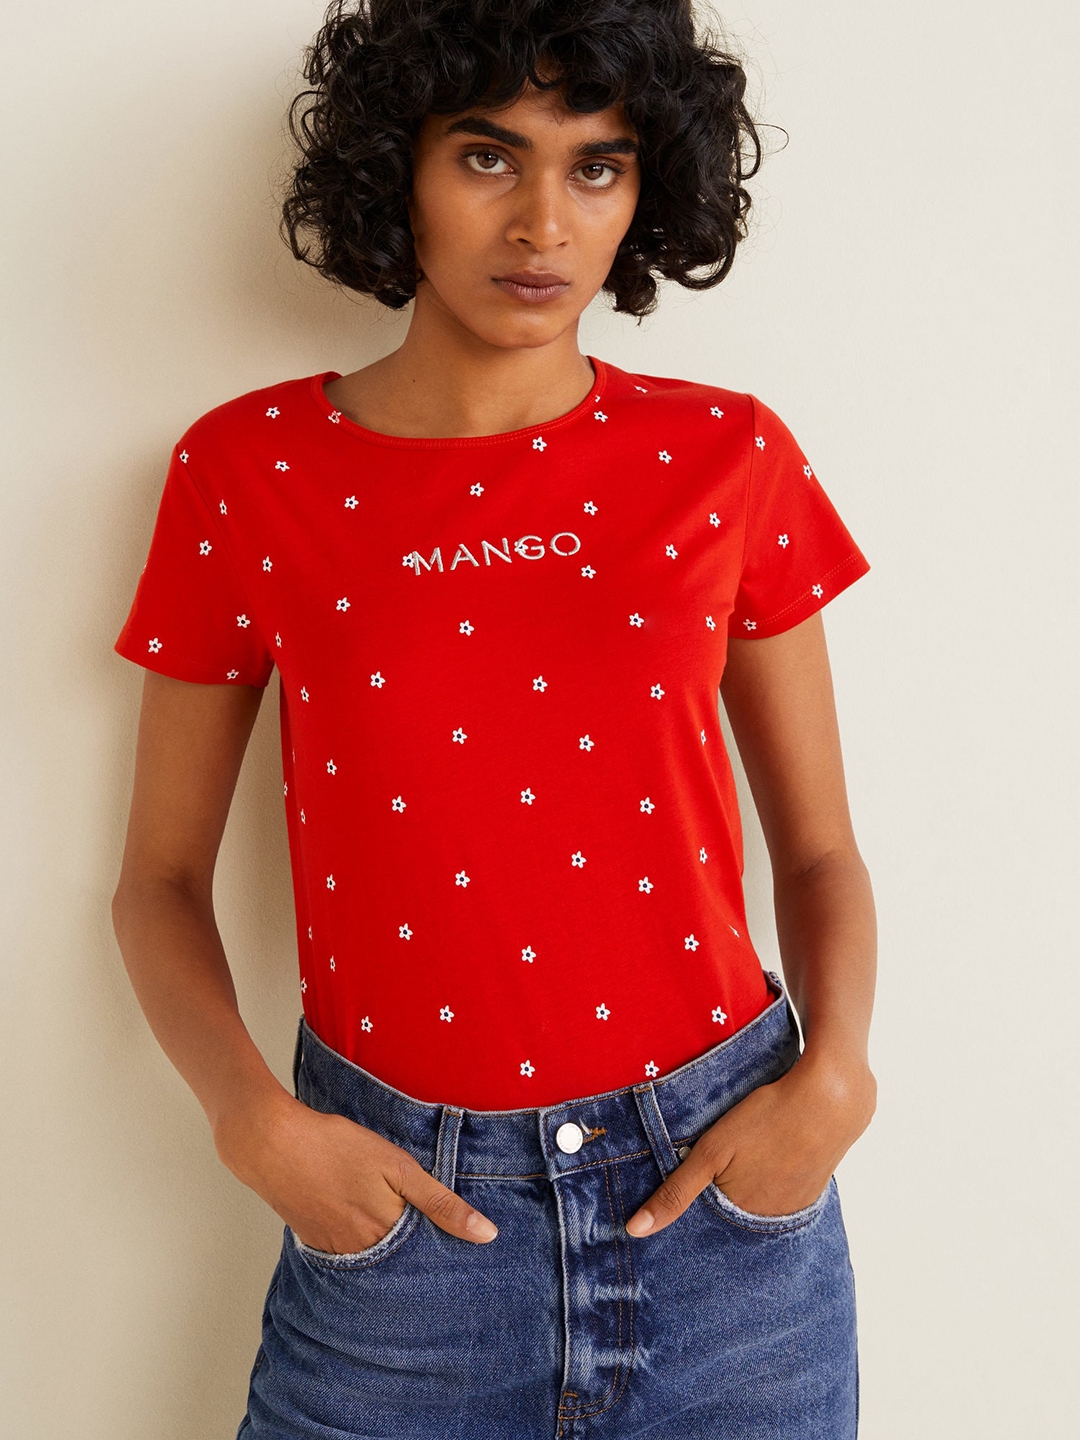 anker Illustrer at tilbagetrække Buy MANGO Women Red Printed Round Neck T Shirt - Tshirts for Women 8675777  | Myntra